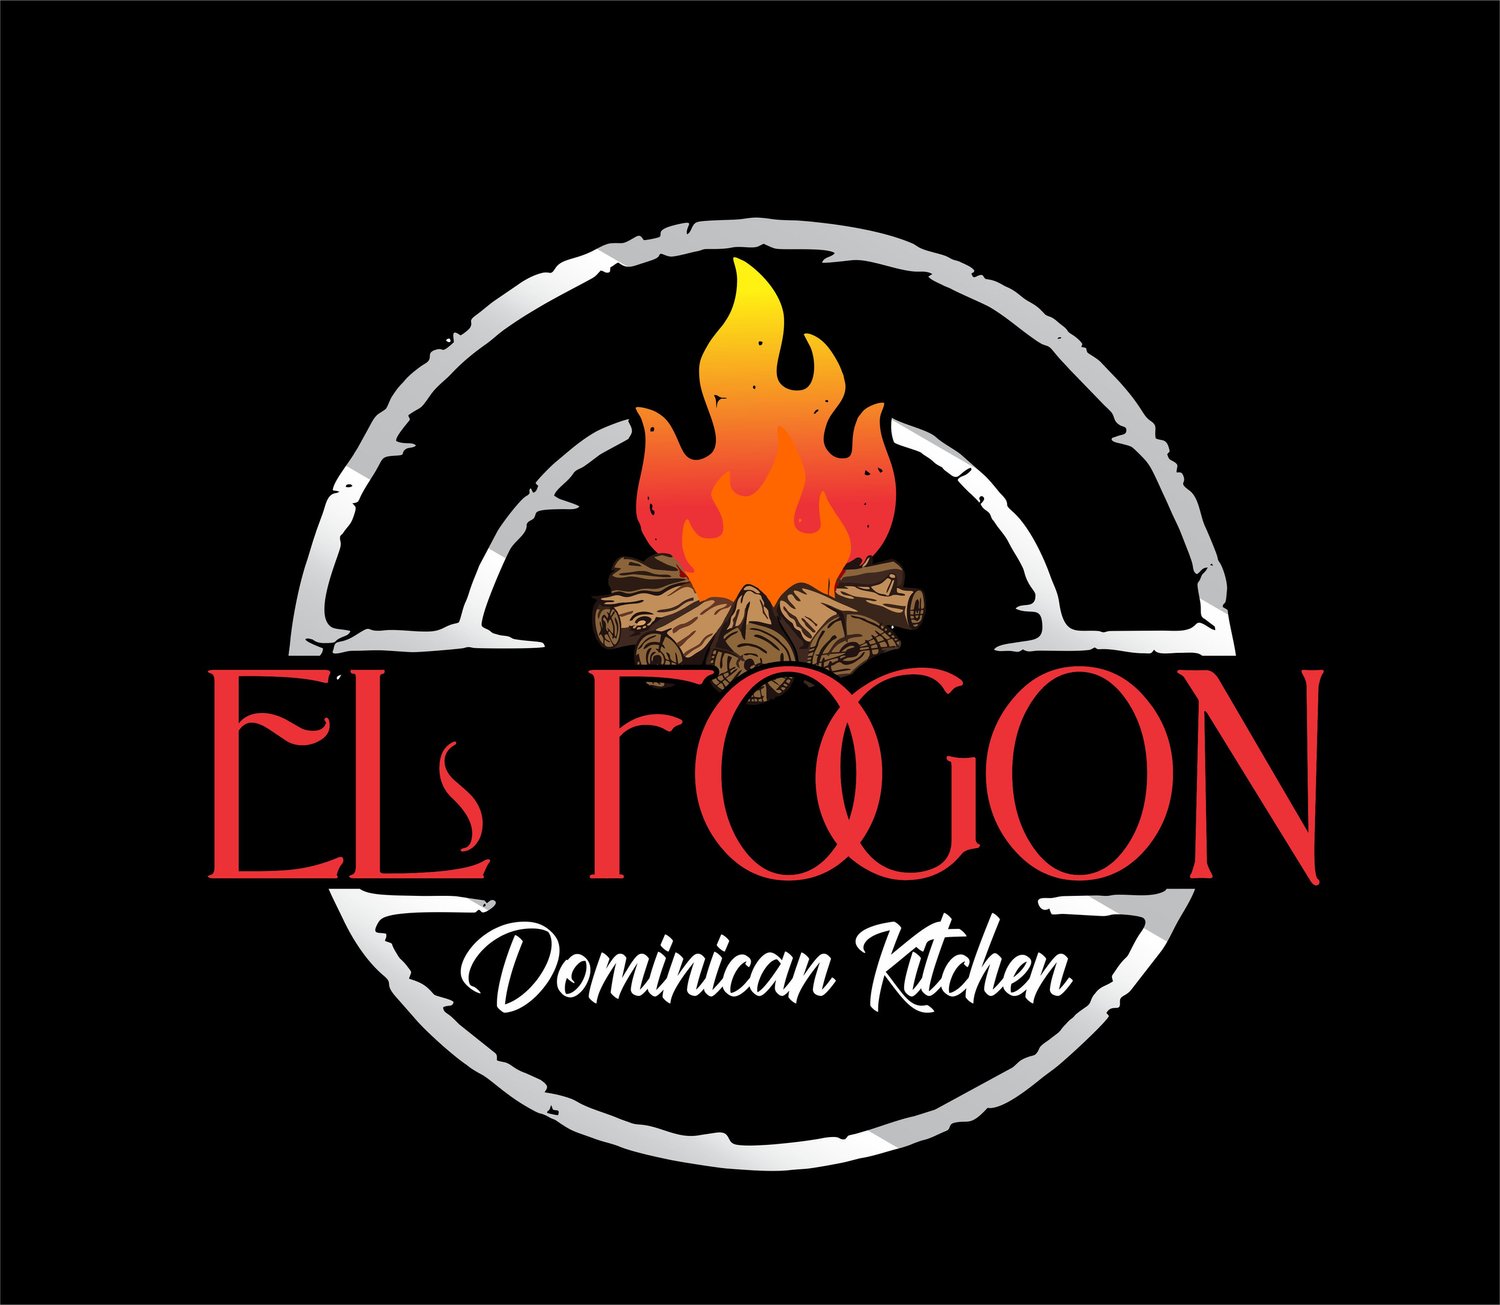 El Fogon Dominican Kitchen